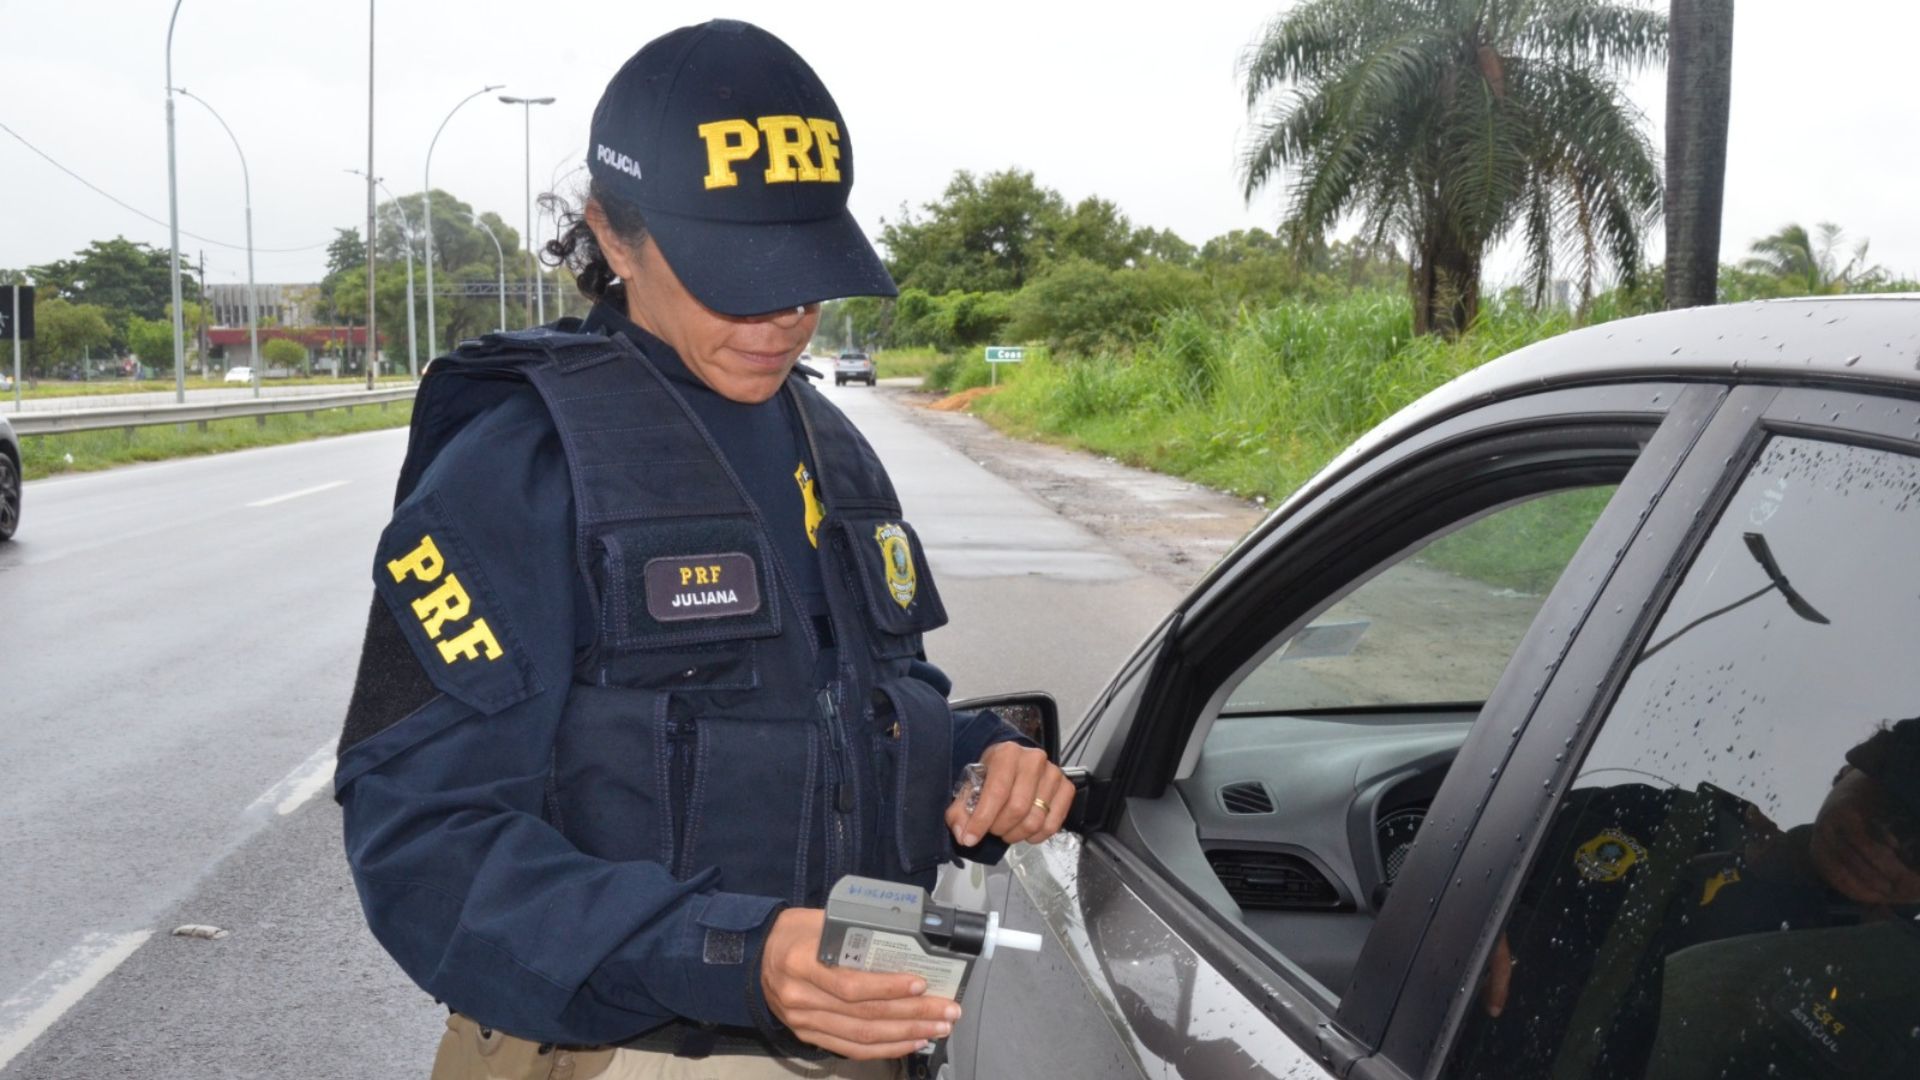 Em Pernambuco, PRF realiza operação de fiscalização contra embriaguez ao volante. Foto: Diculgação/PRF